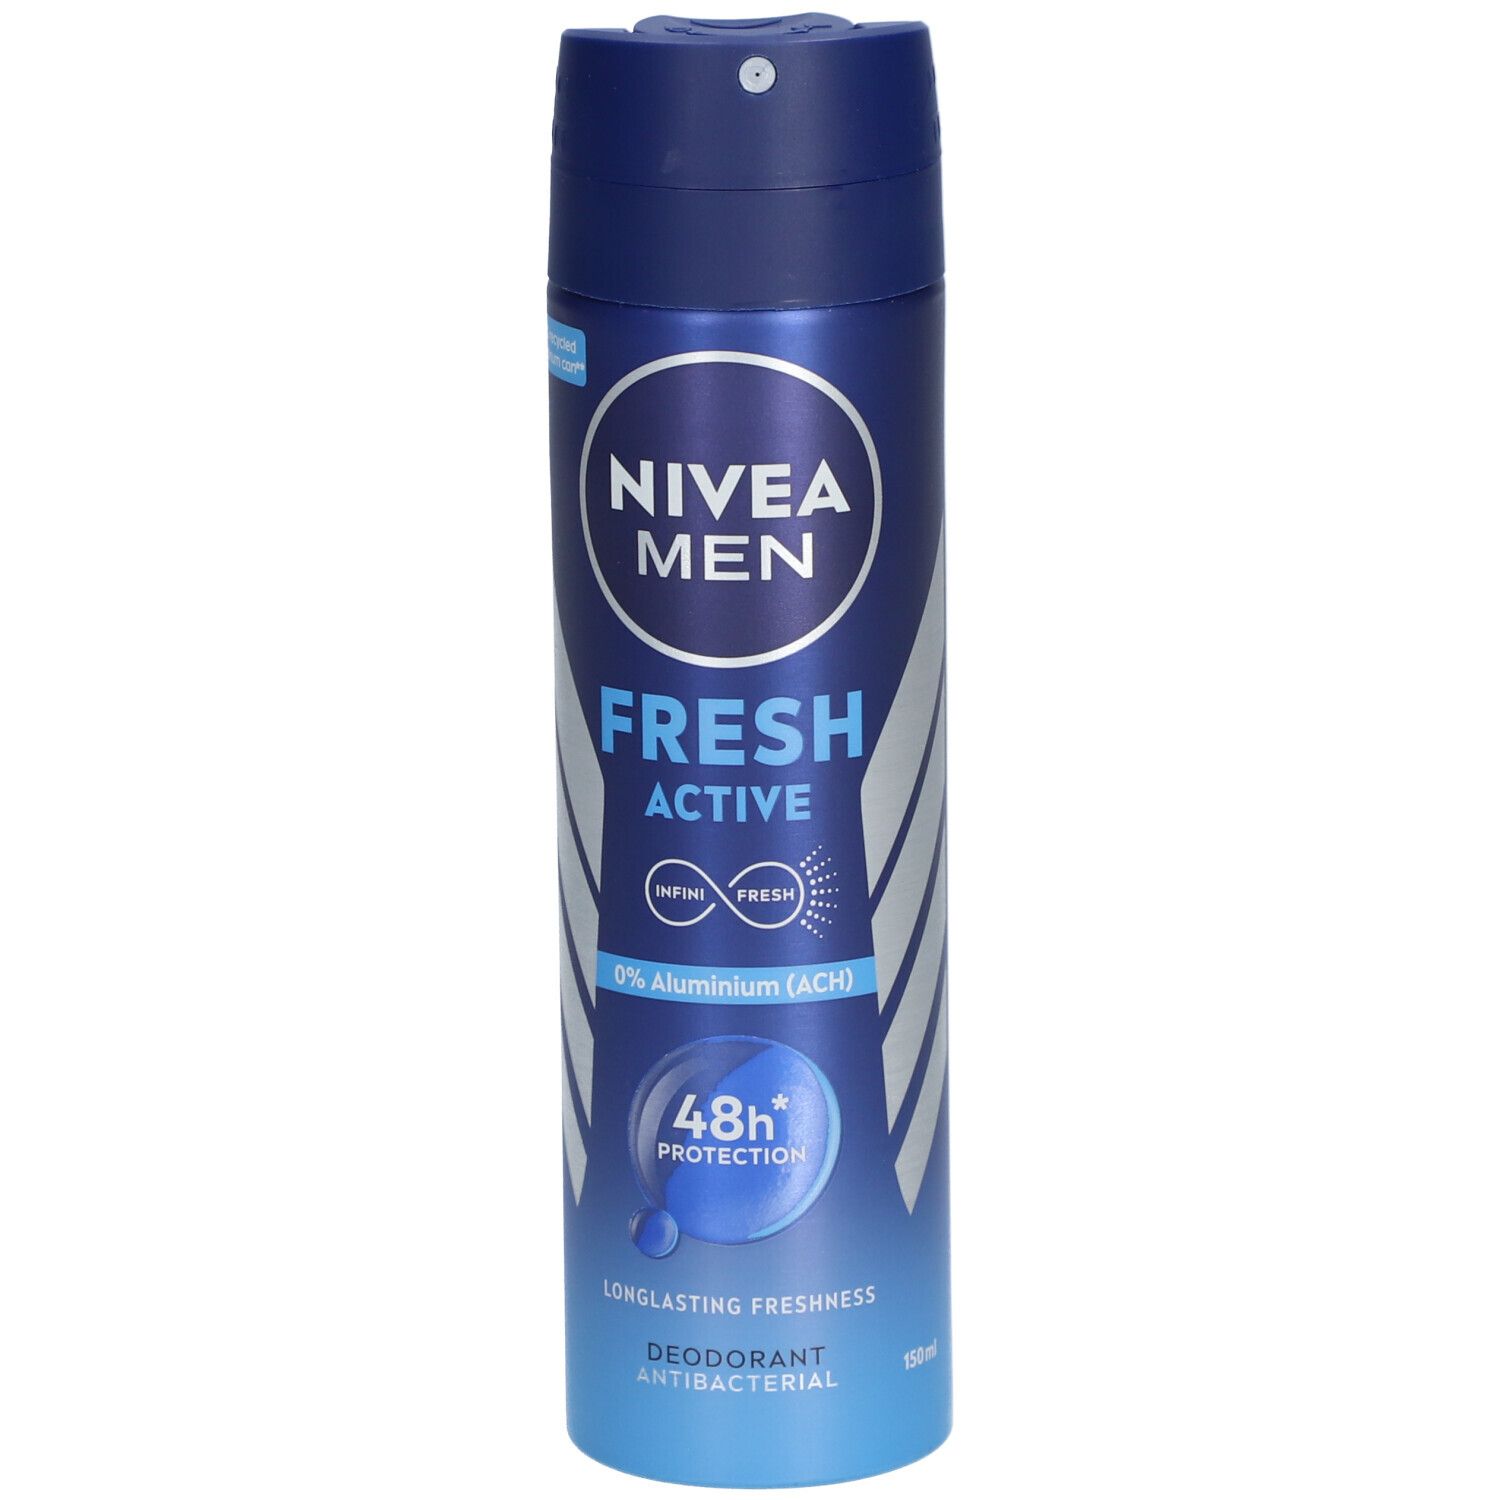 Image of NIVEA MEN FRESH ACTIVE Spray Deodorant